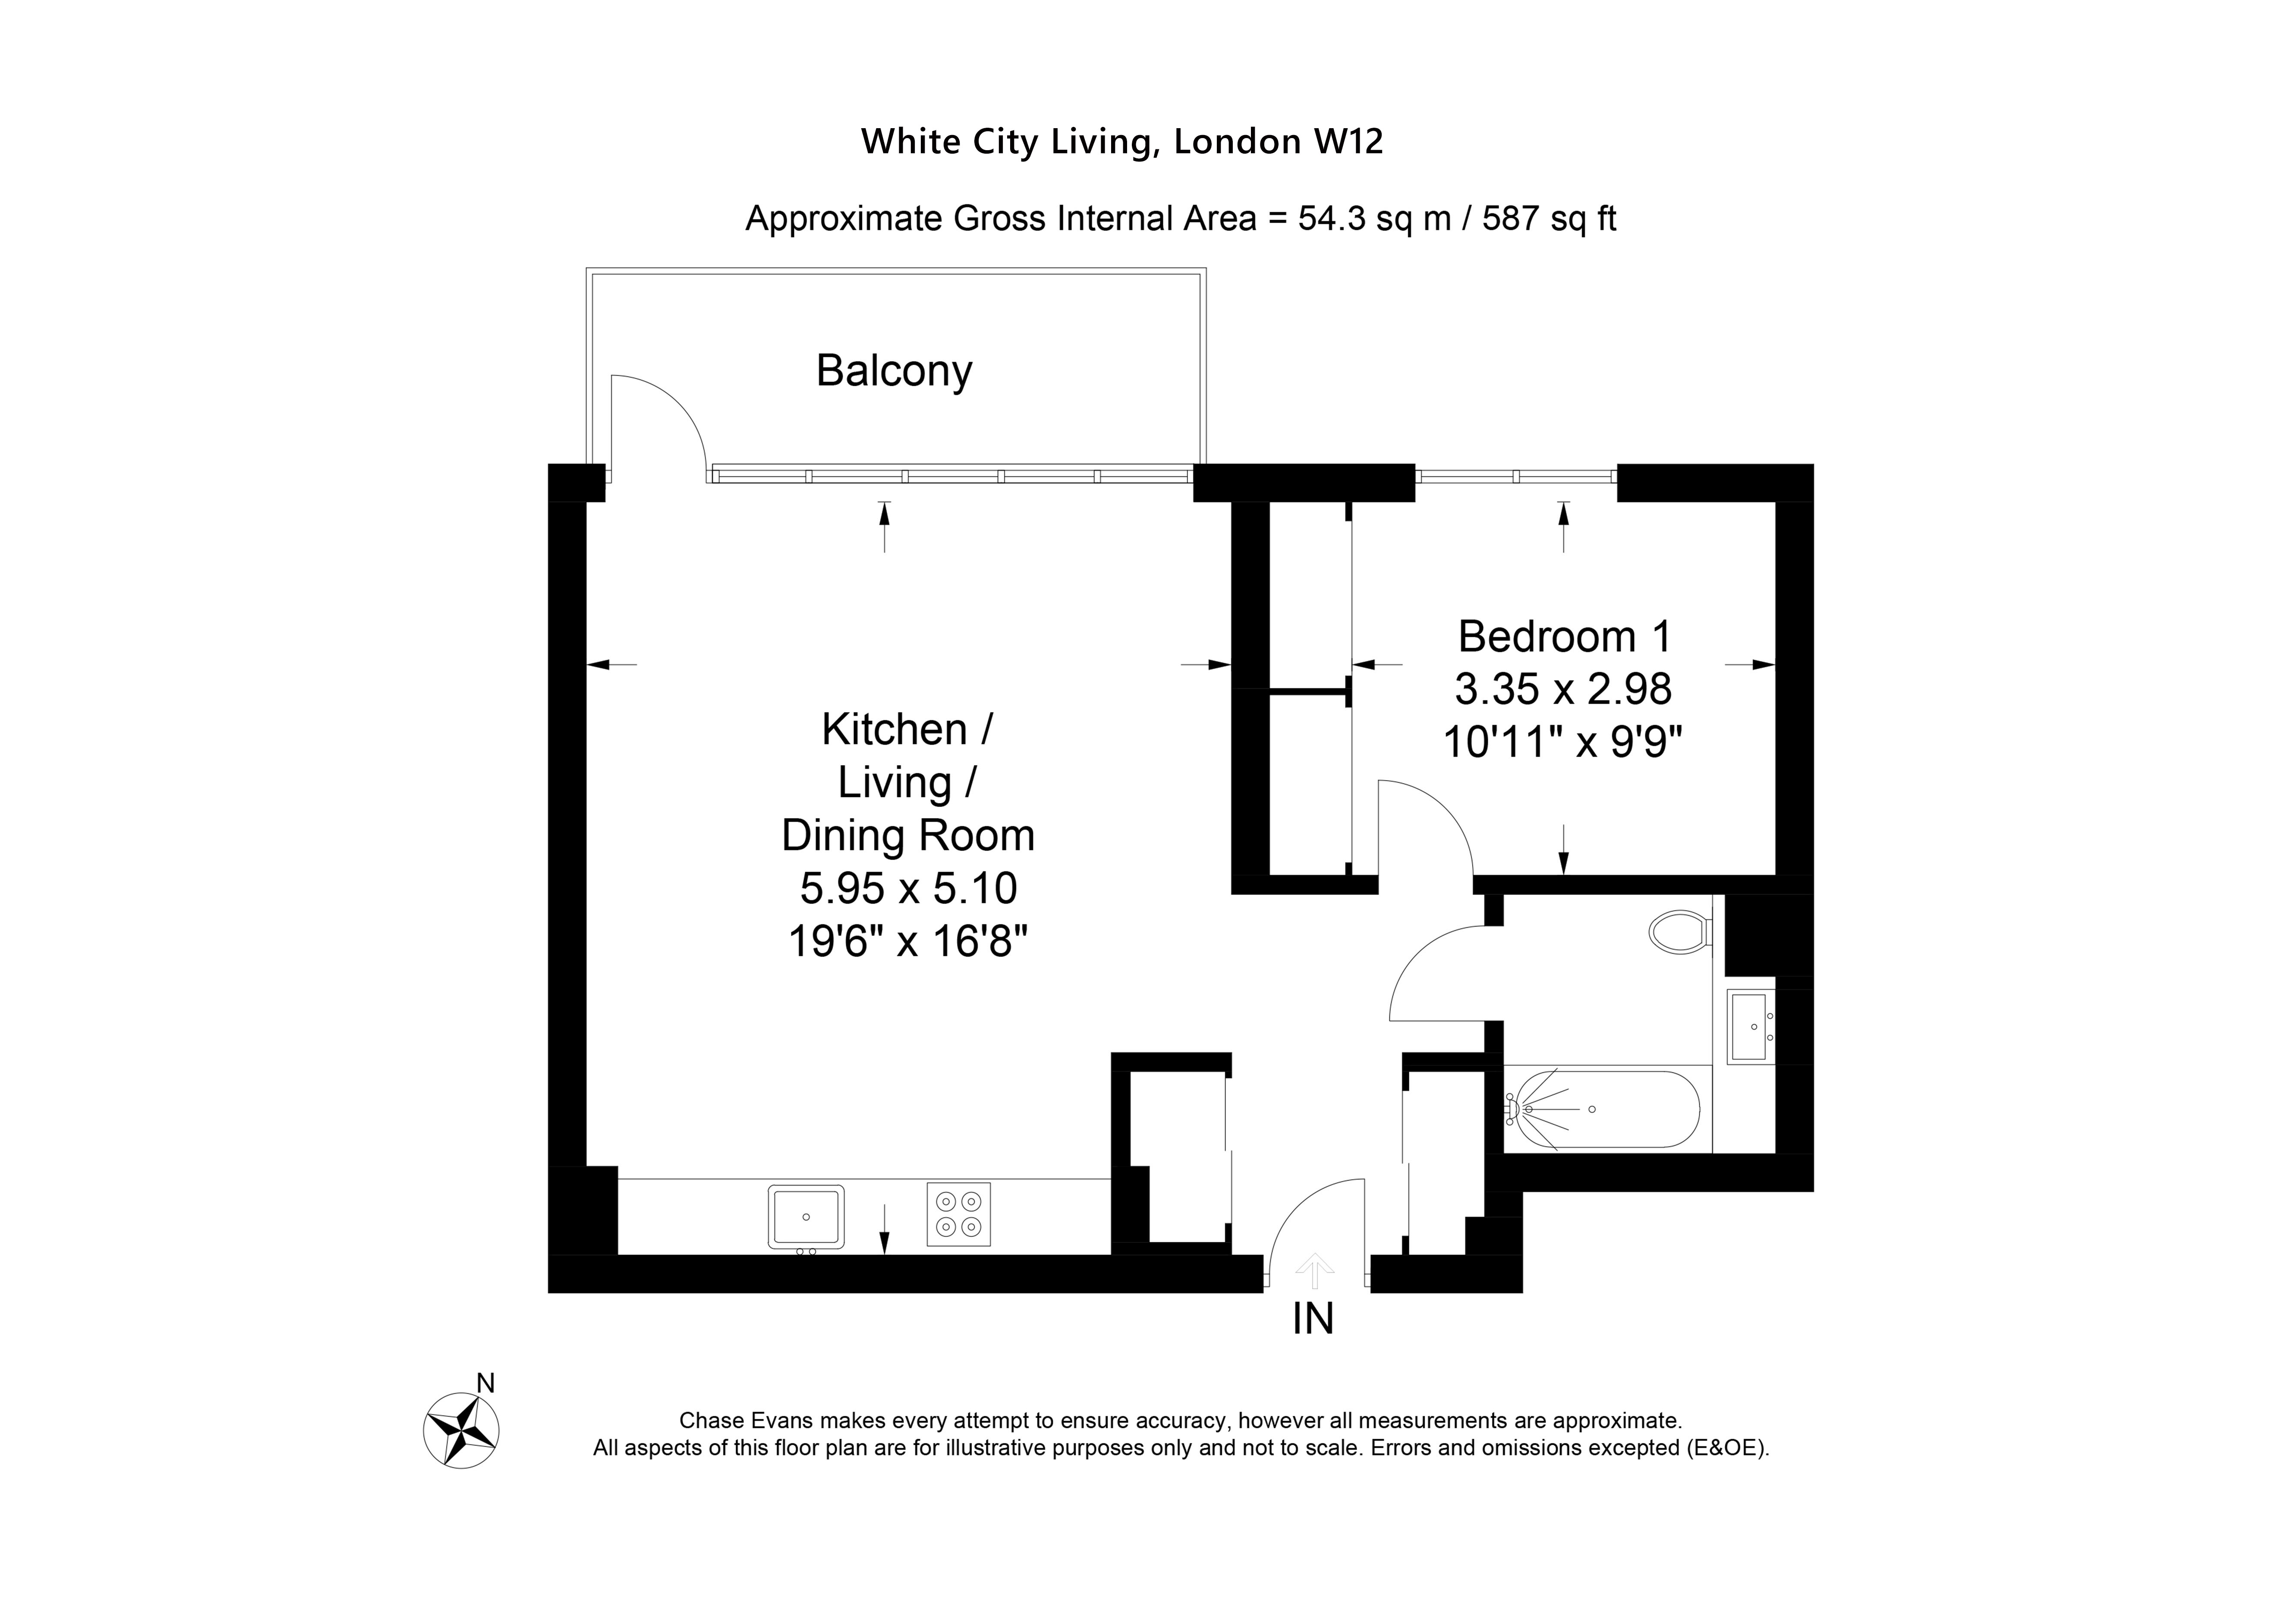 White City Living New Homes floor plan